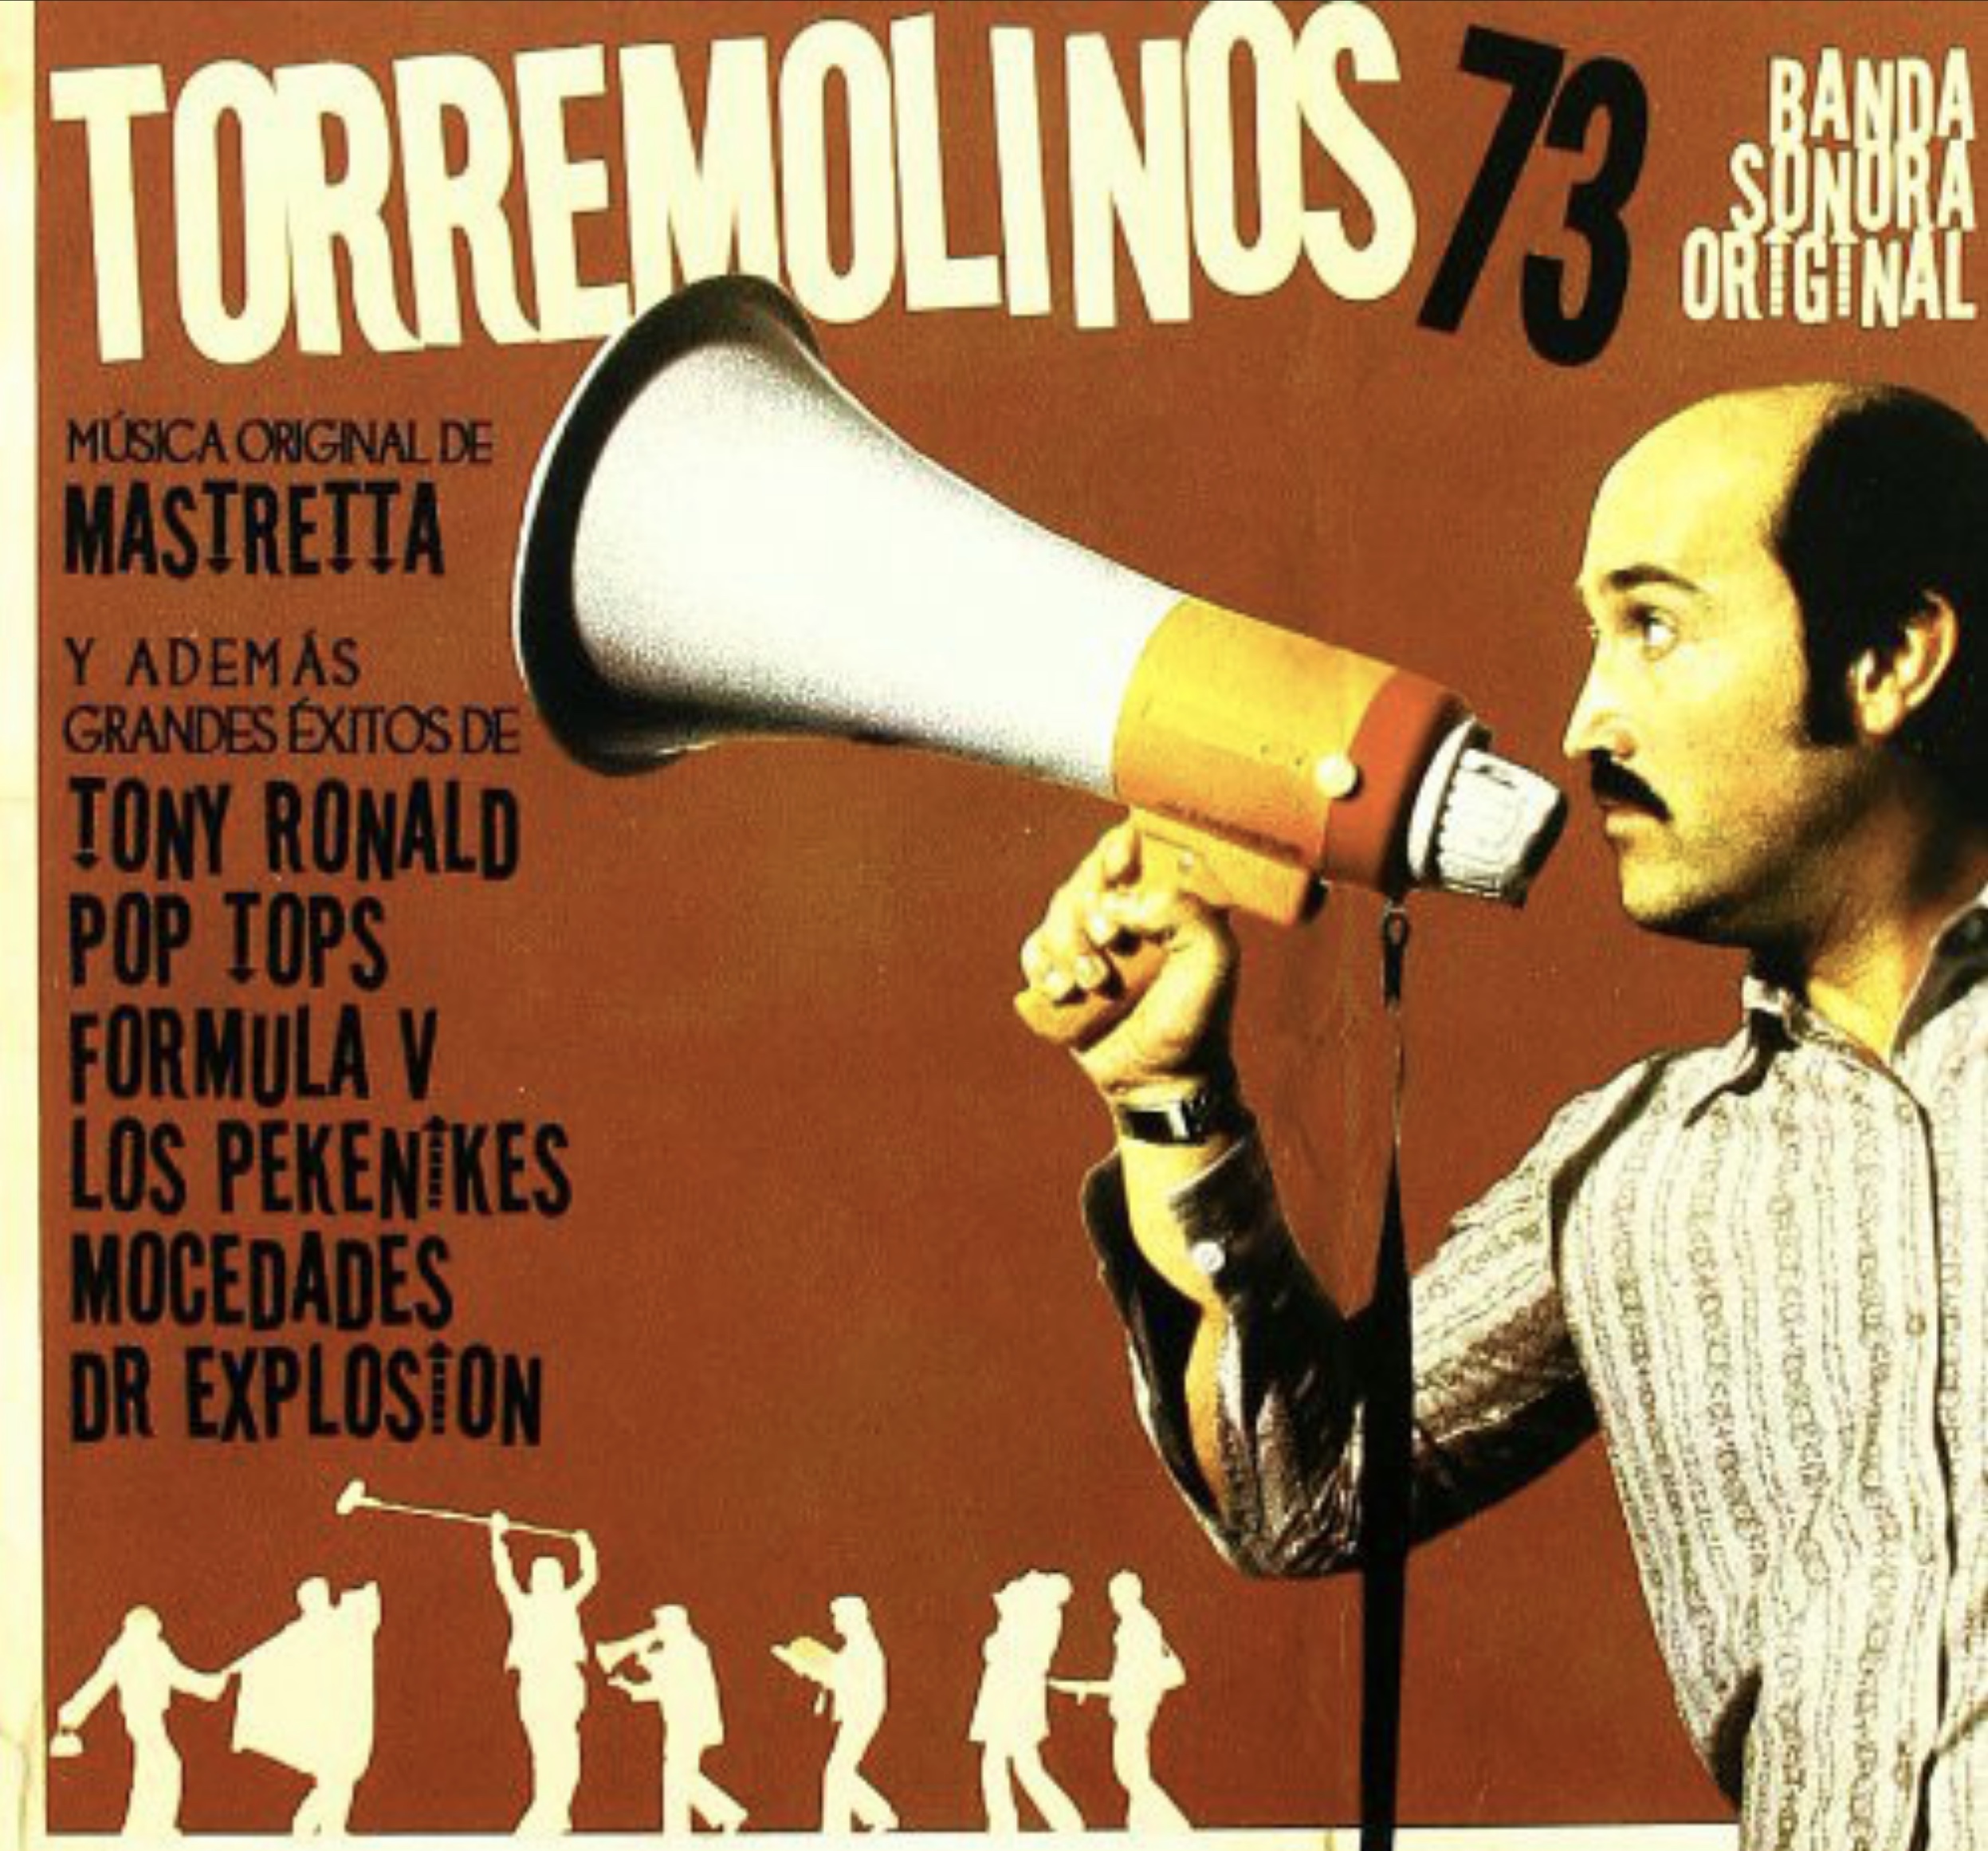 Torremolinos 73 (BSO) | Mastretta